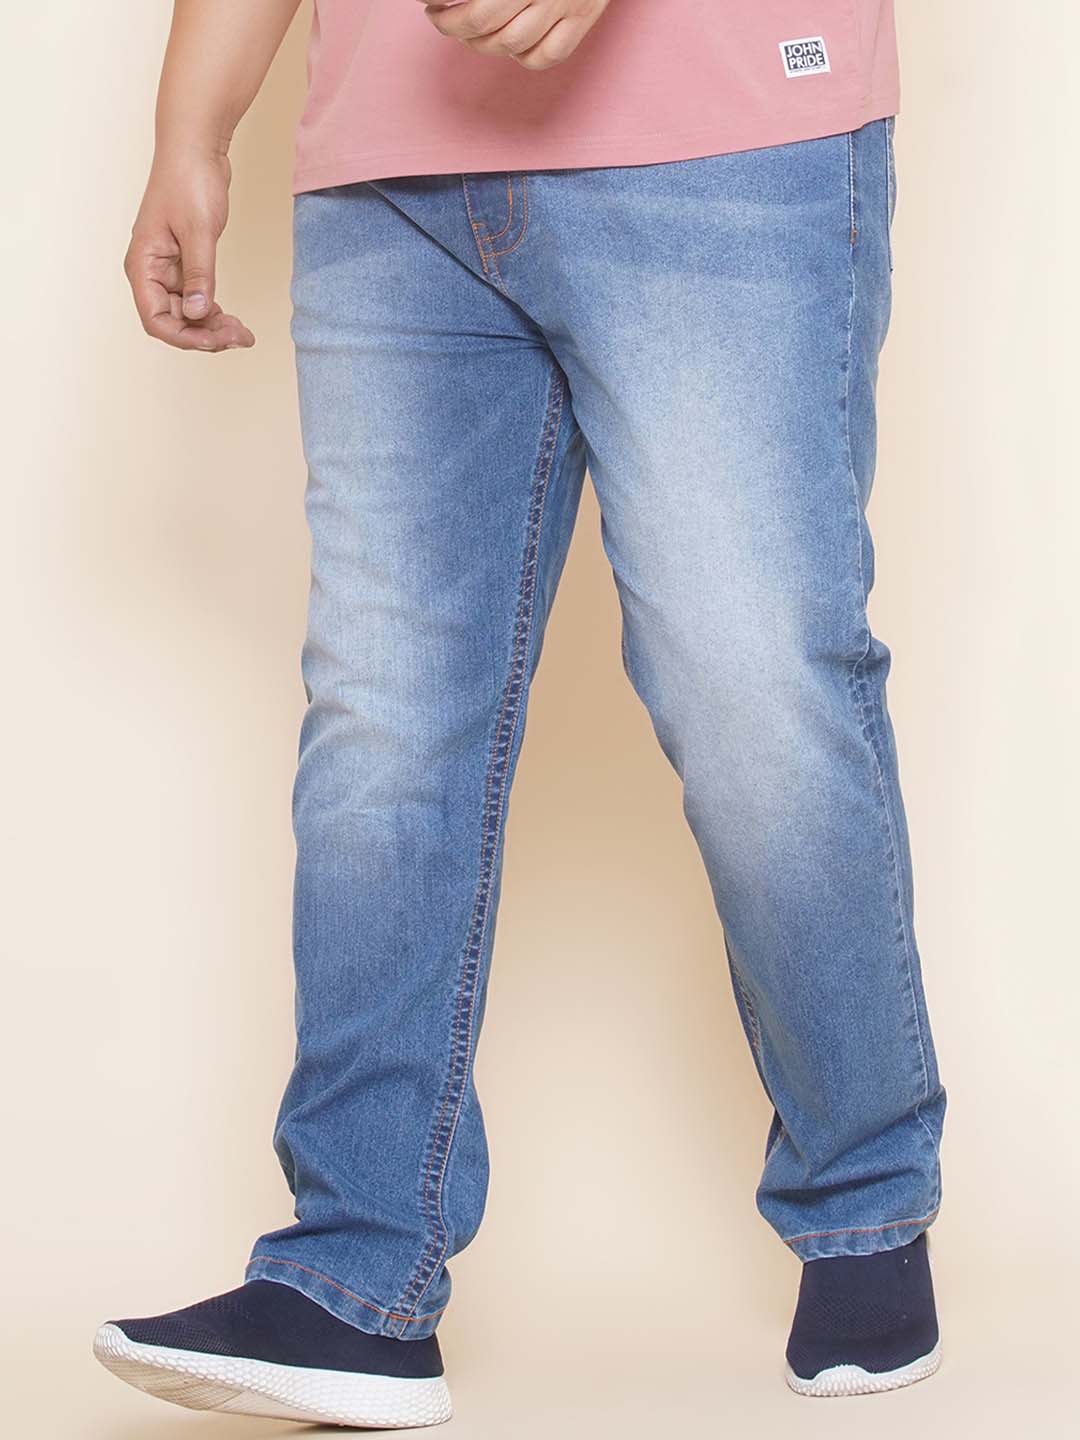 bottomwear/jeans/EJPJ25100/ejpj25100-1.jpg